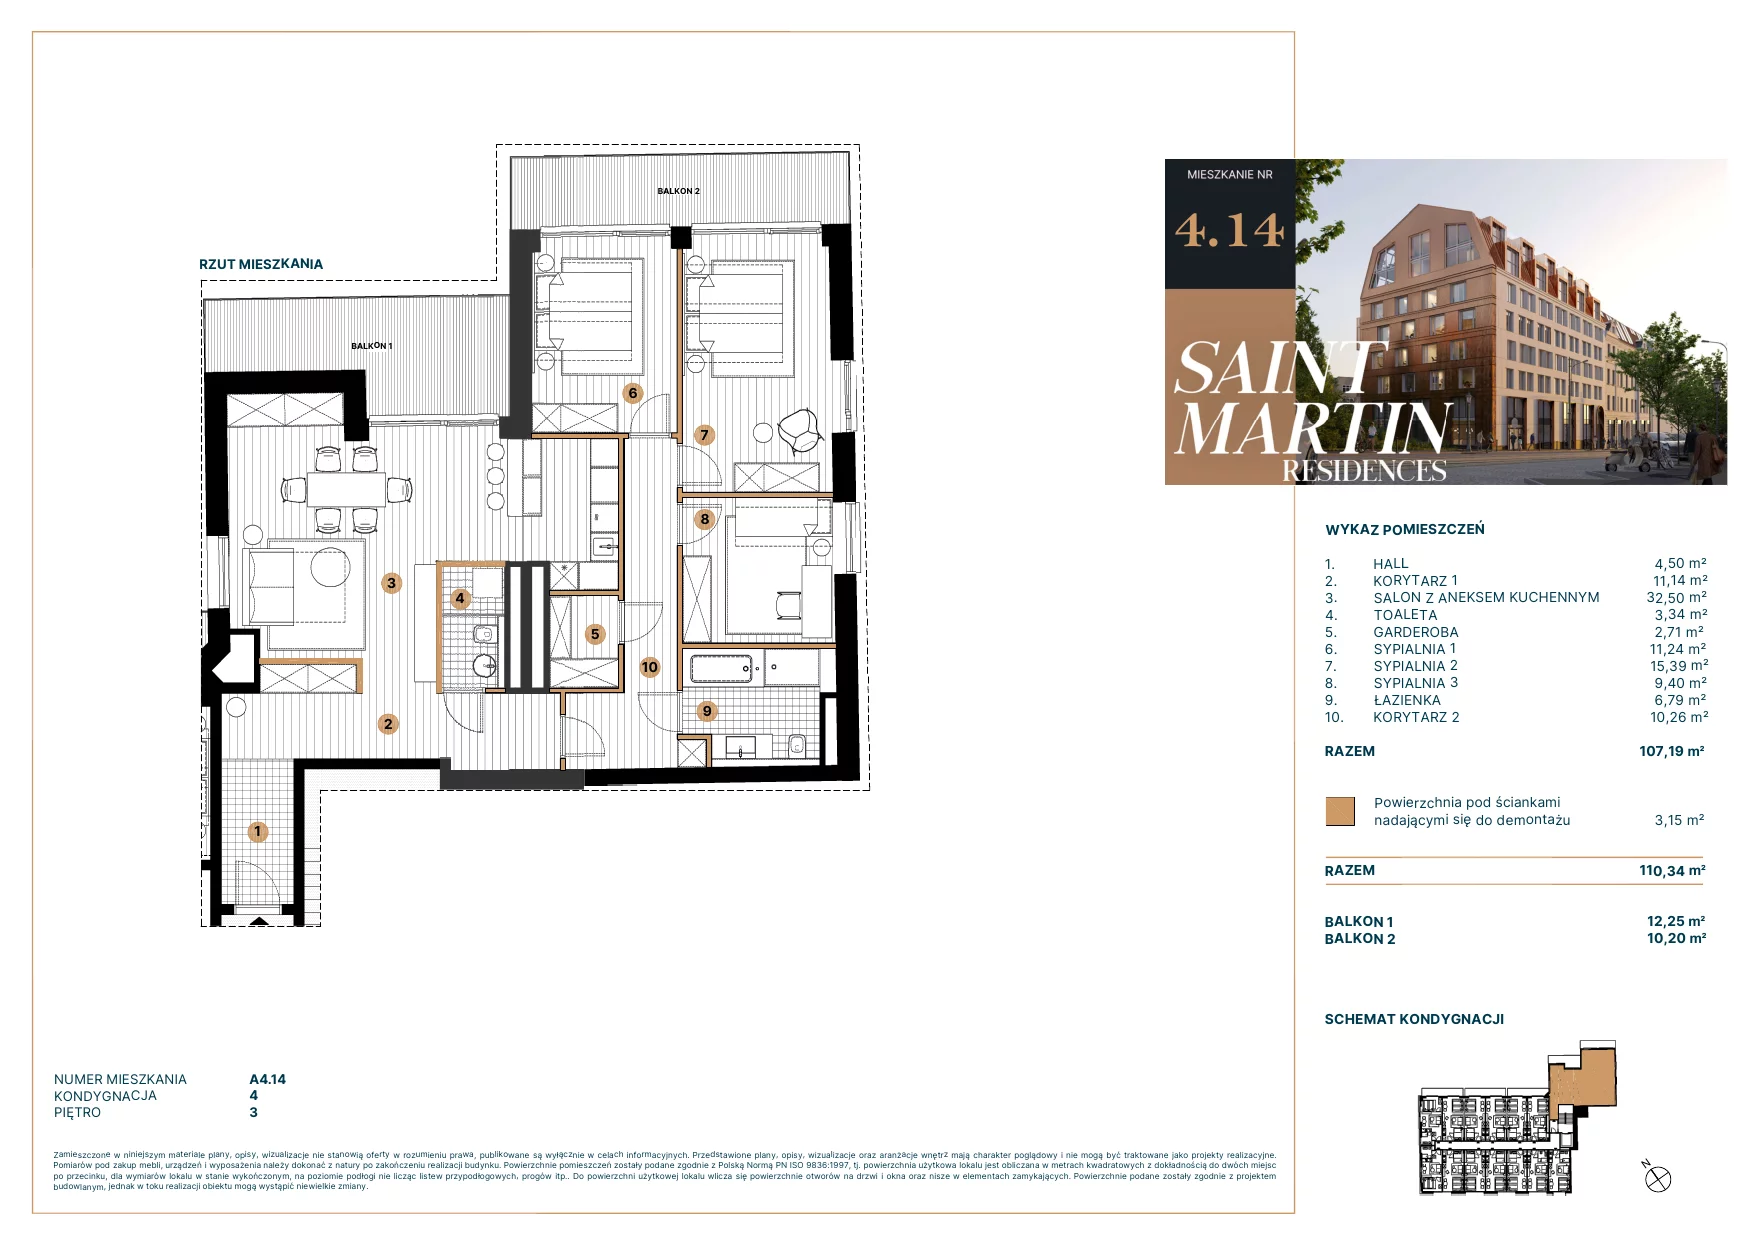 Mieszkanie 108,12 m², piętro 3, oferta nr A4.14, Saint Martin Residences II, Poznań, Stare Miasto, Stare Miasto, ul. Podgórna 7